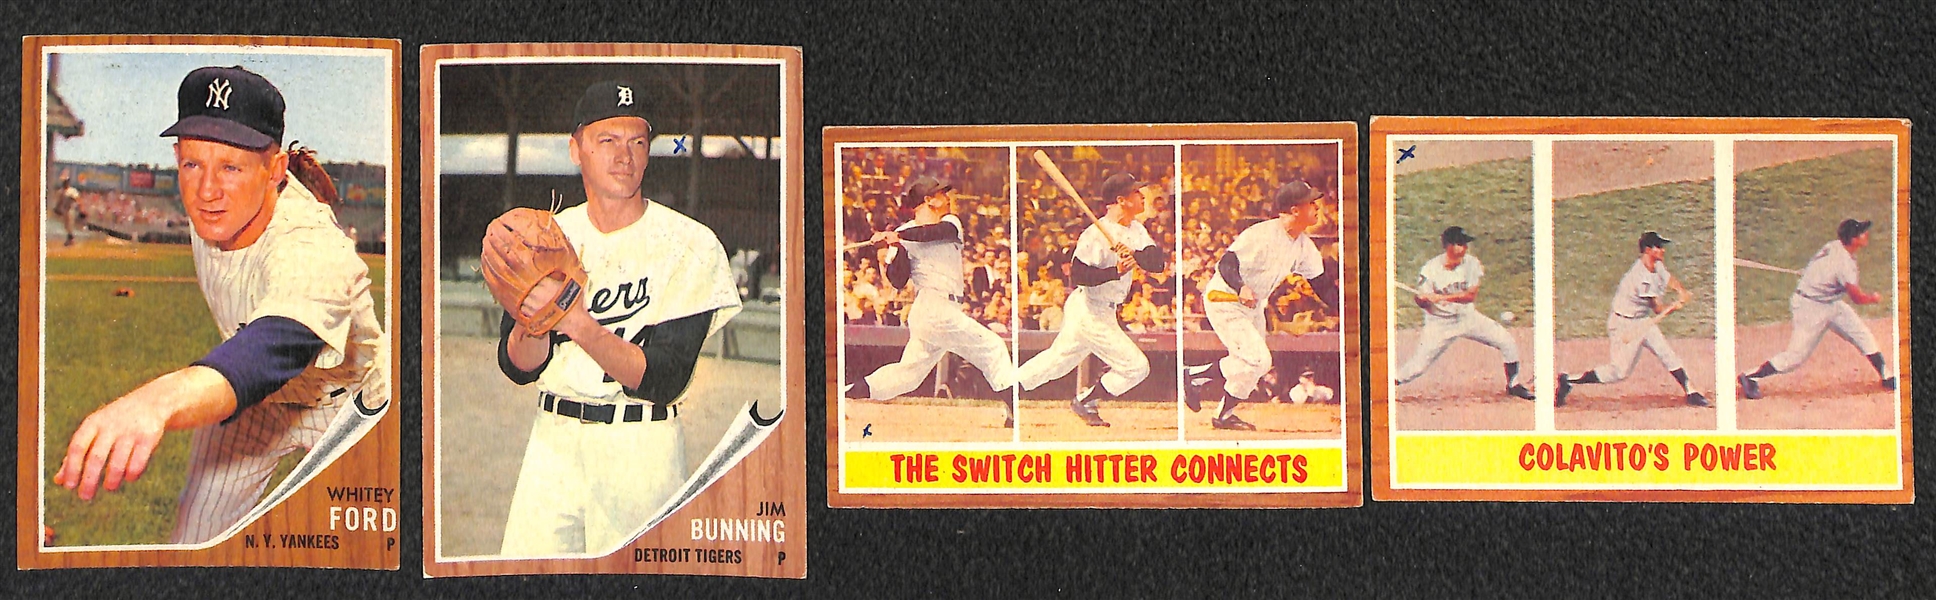 Lot of 175 Assorted 1962 Topps Baseball Cards w. Duke Snider